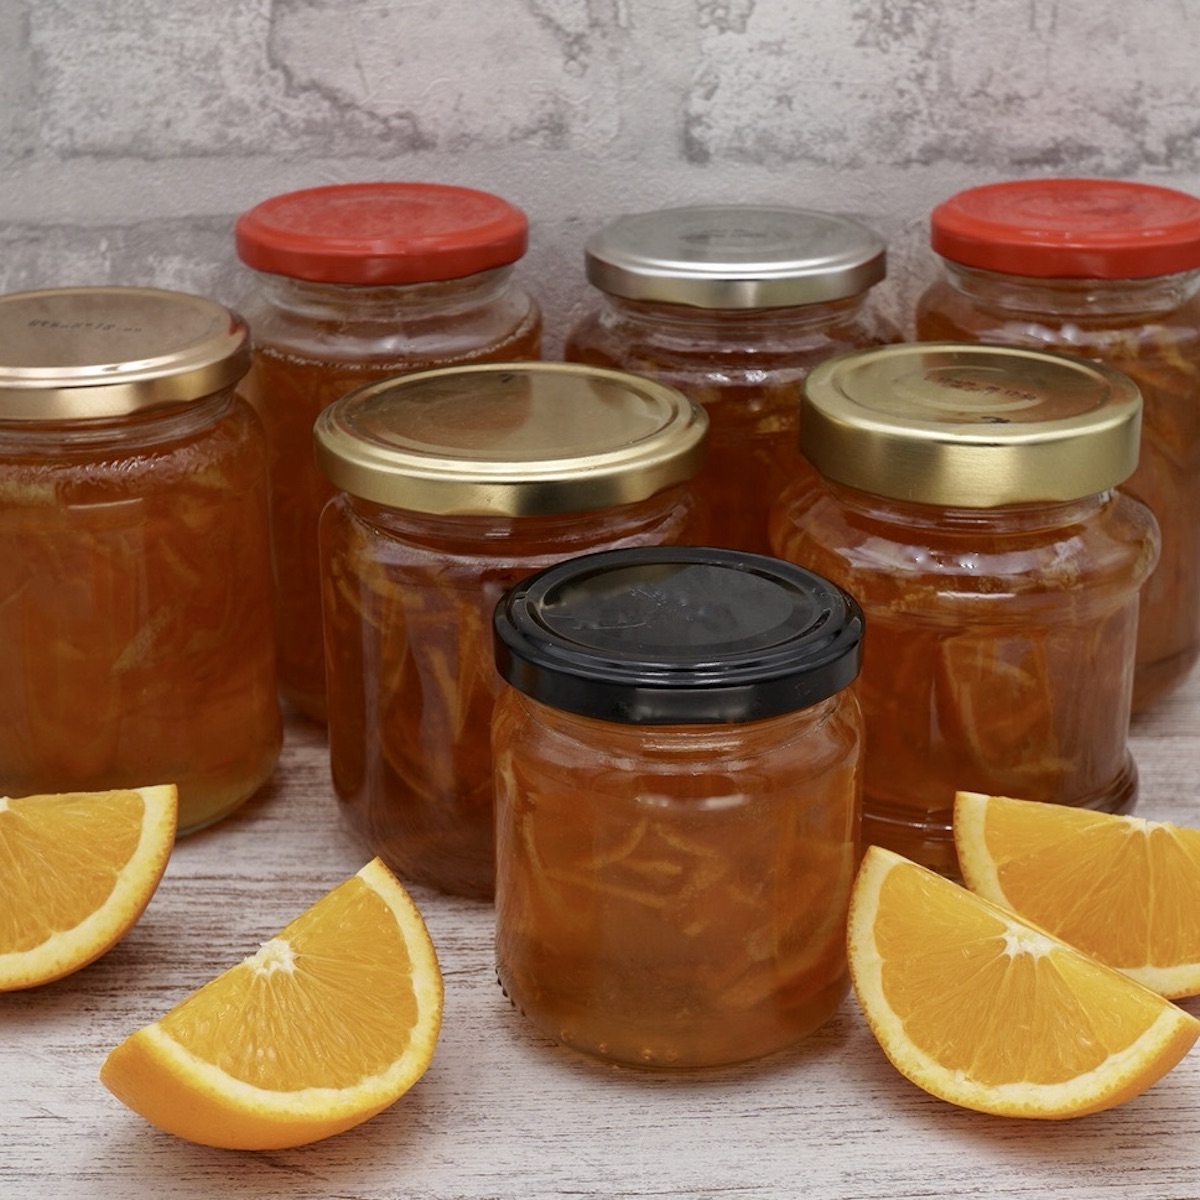 Several jars of homemade Seville orange marmalade.